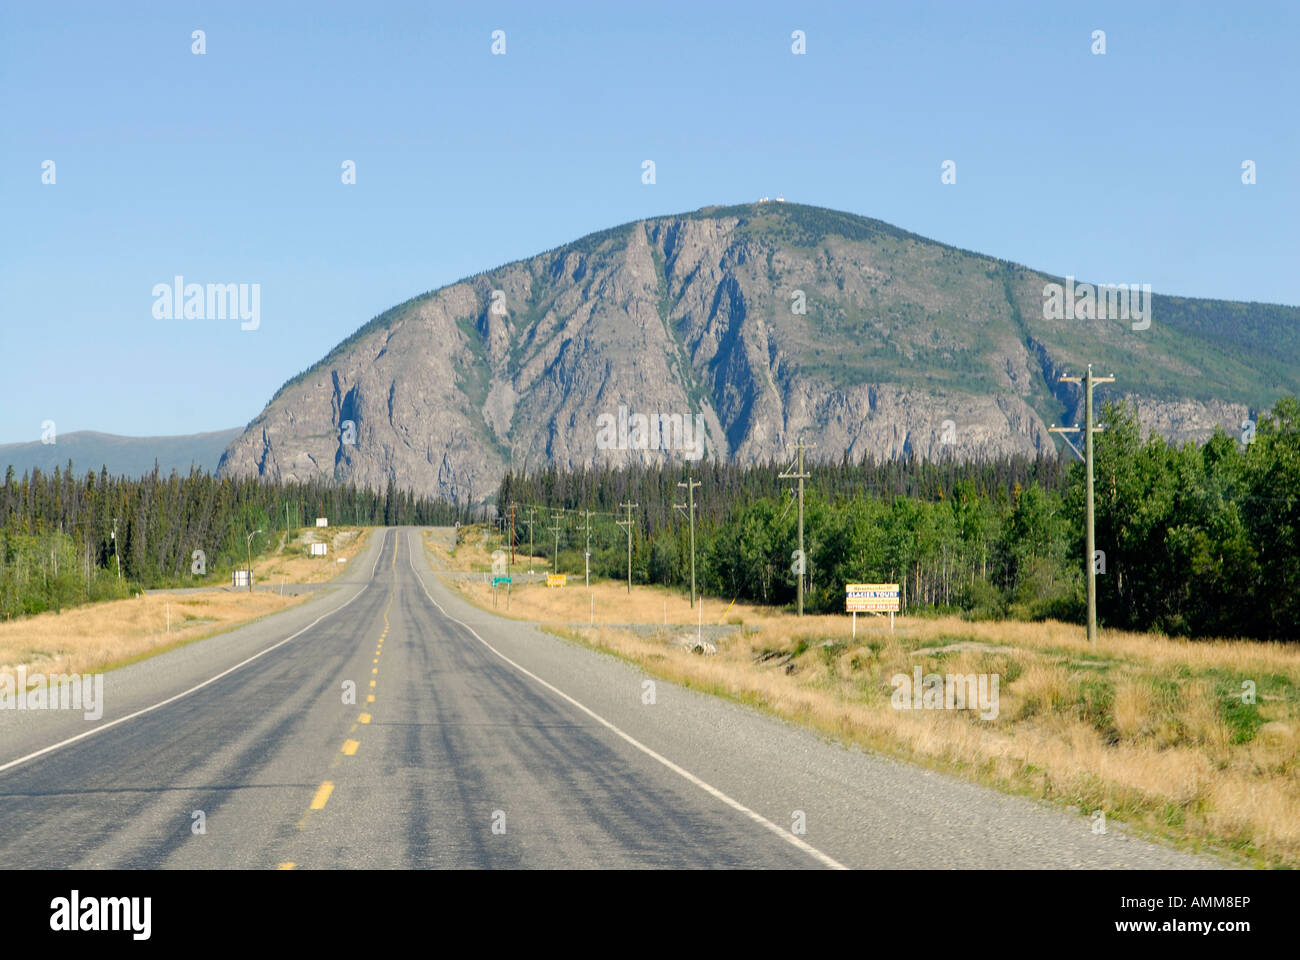 La montagne de peinture près de Haines Junction, Yukon Yukon Canada Banque D'Images